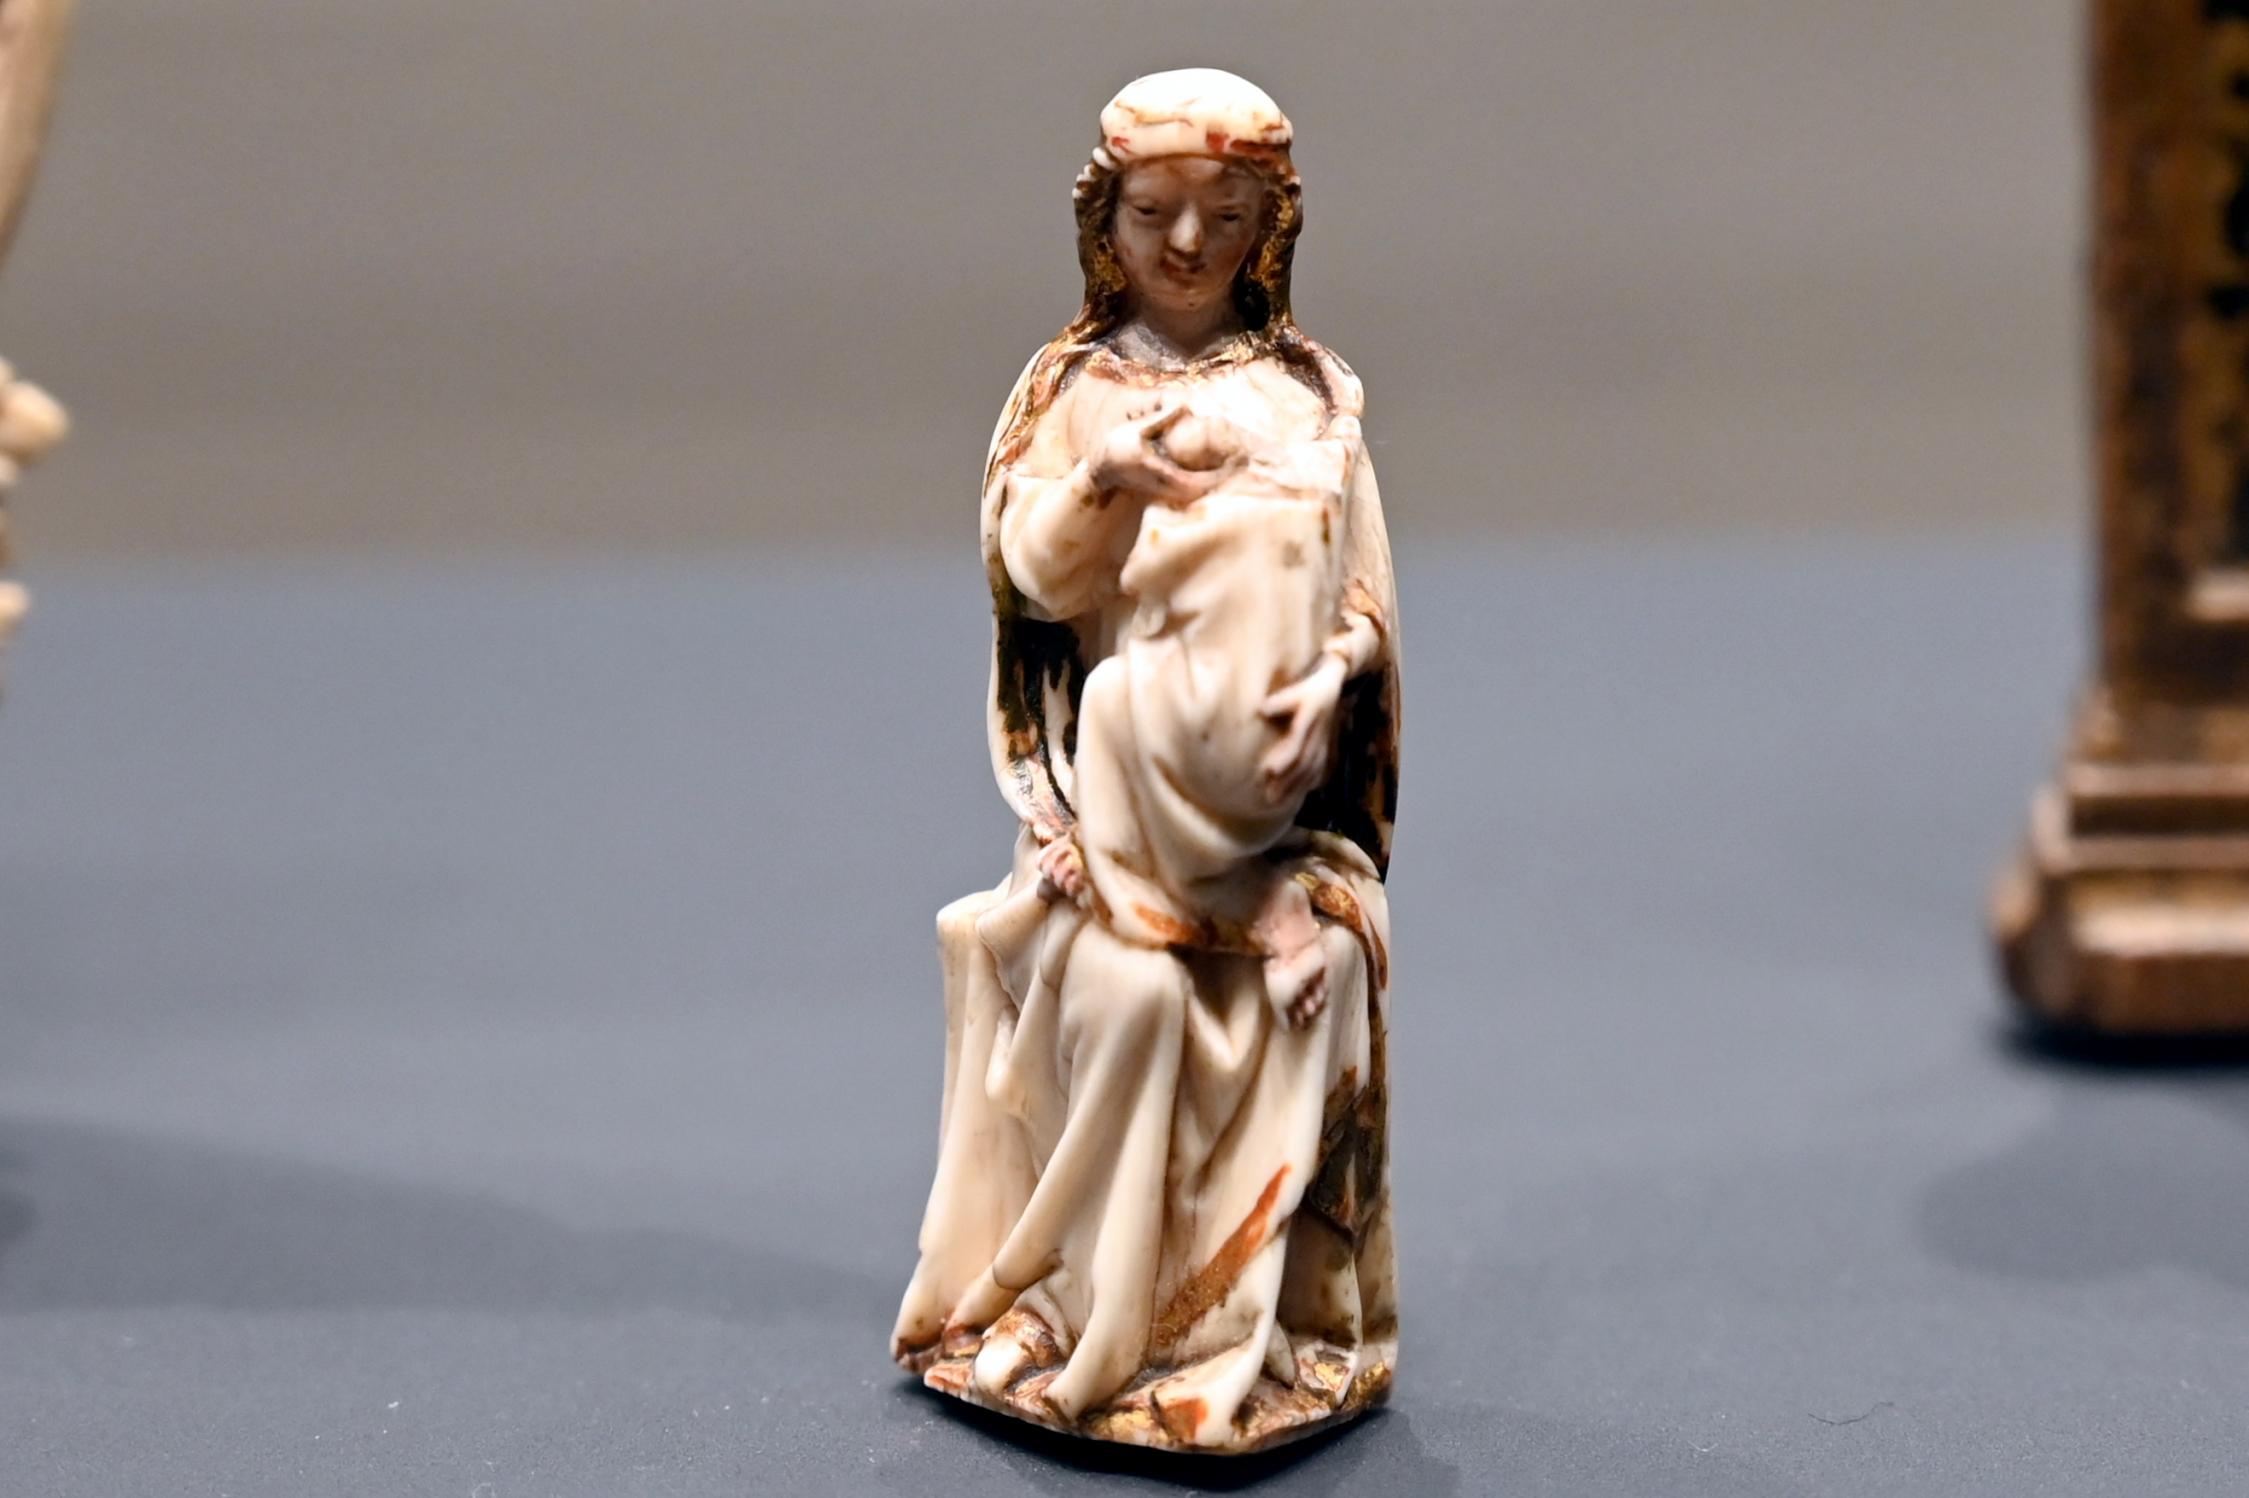 Kleine Maria lactans (Stillende Maria), Darmstadt, Hessisches Landesmuseum, Kirchliche Schatzkammer, Ende 14. Jhd., Bild 1/2